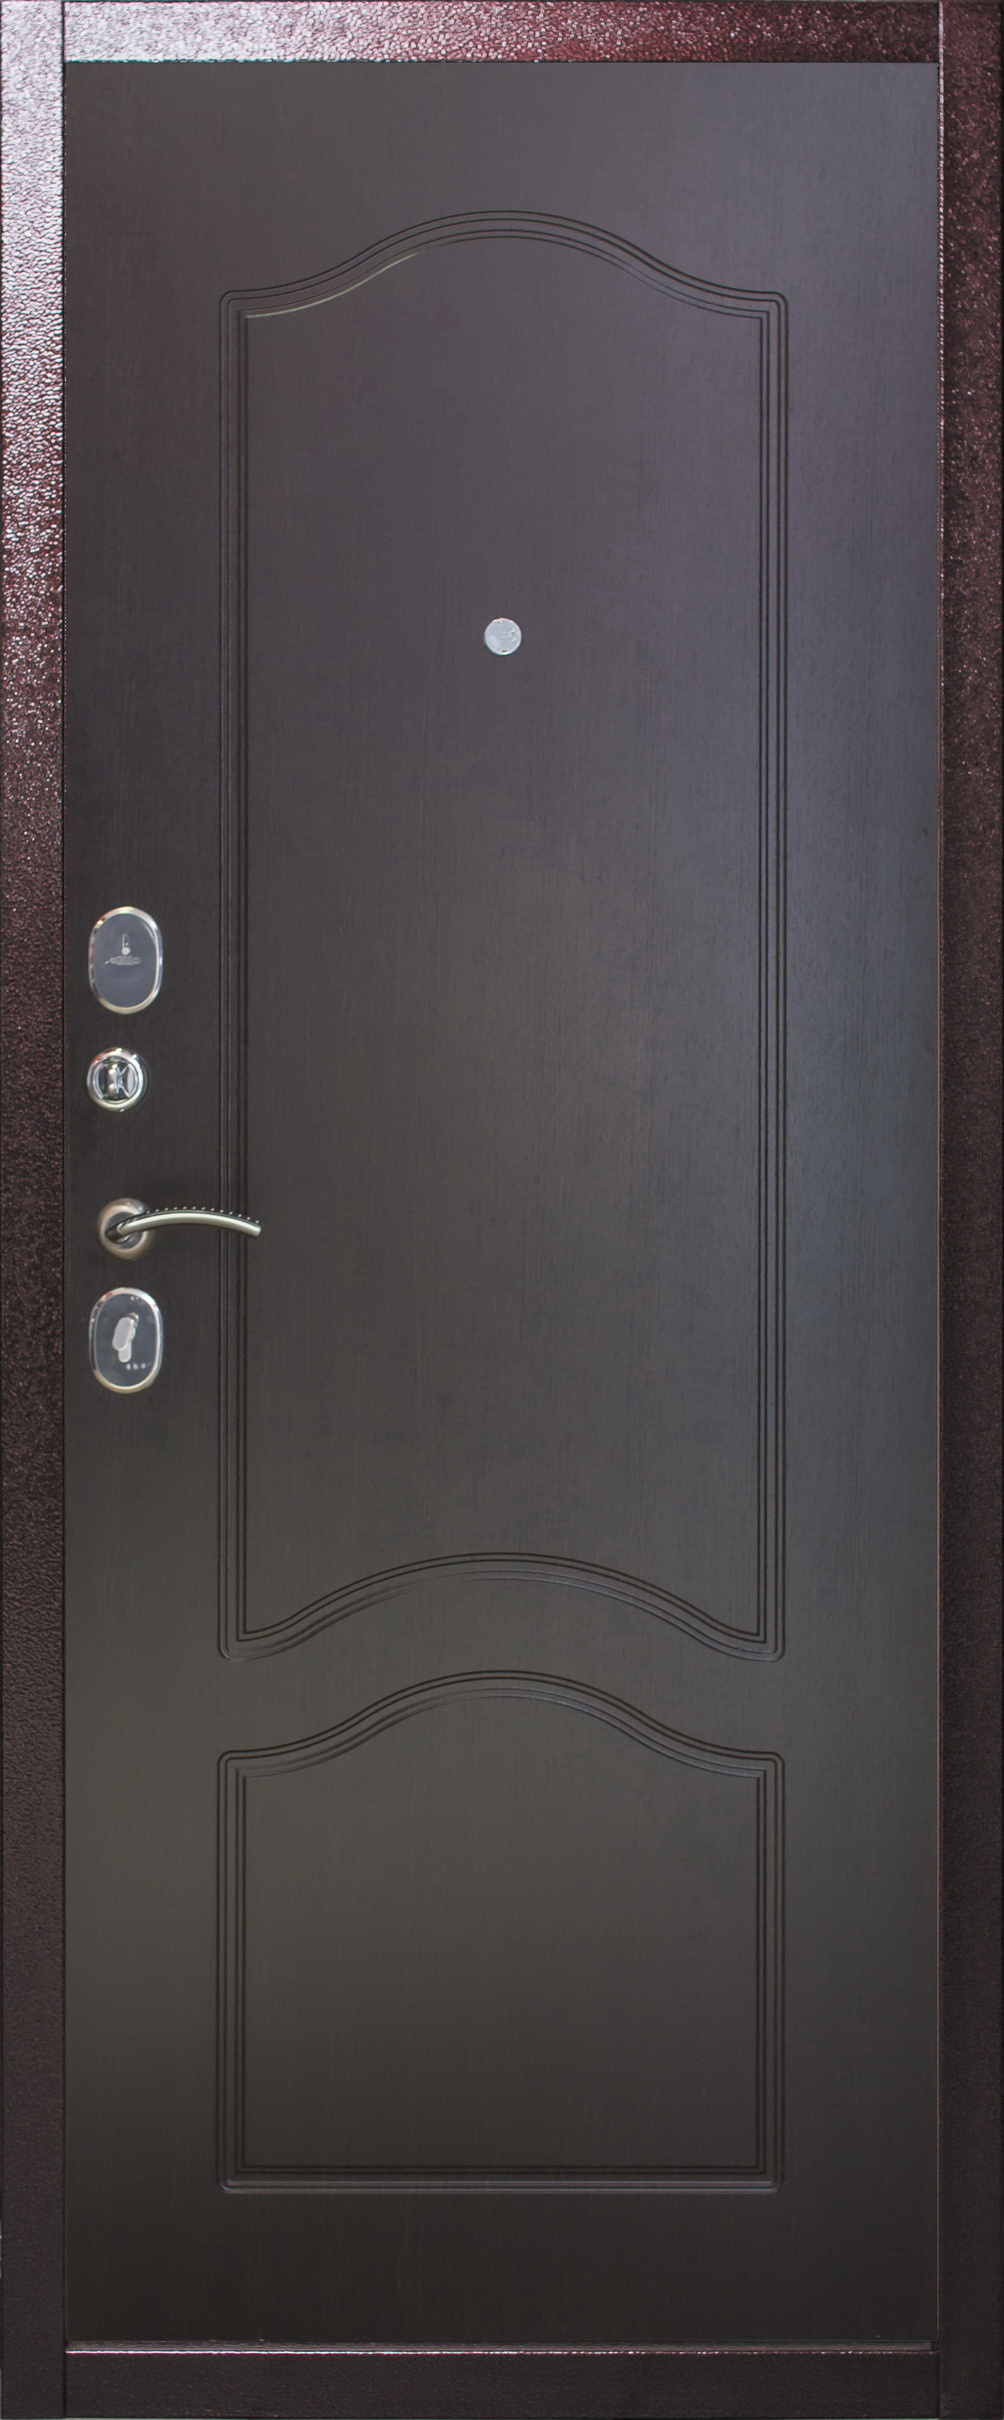 Дверной стандарт Входная дверь Страж 2K G30, арт. 0000800 - фото №1